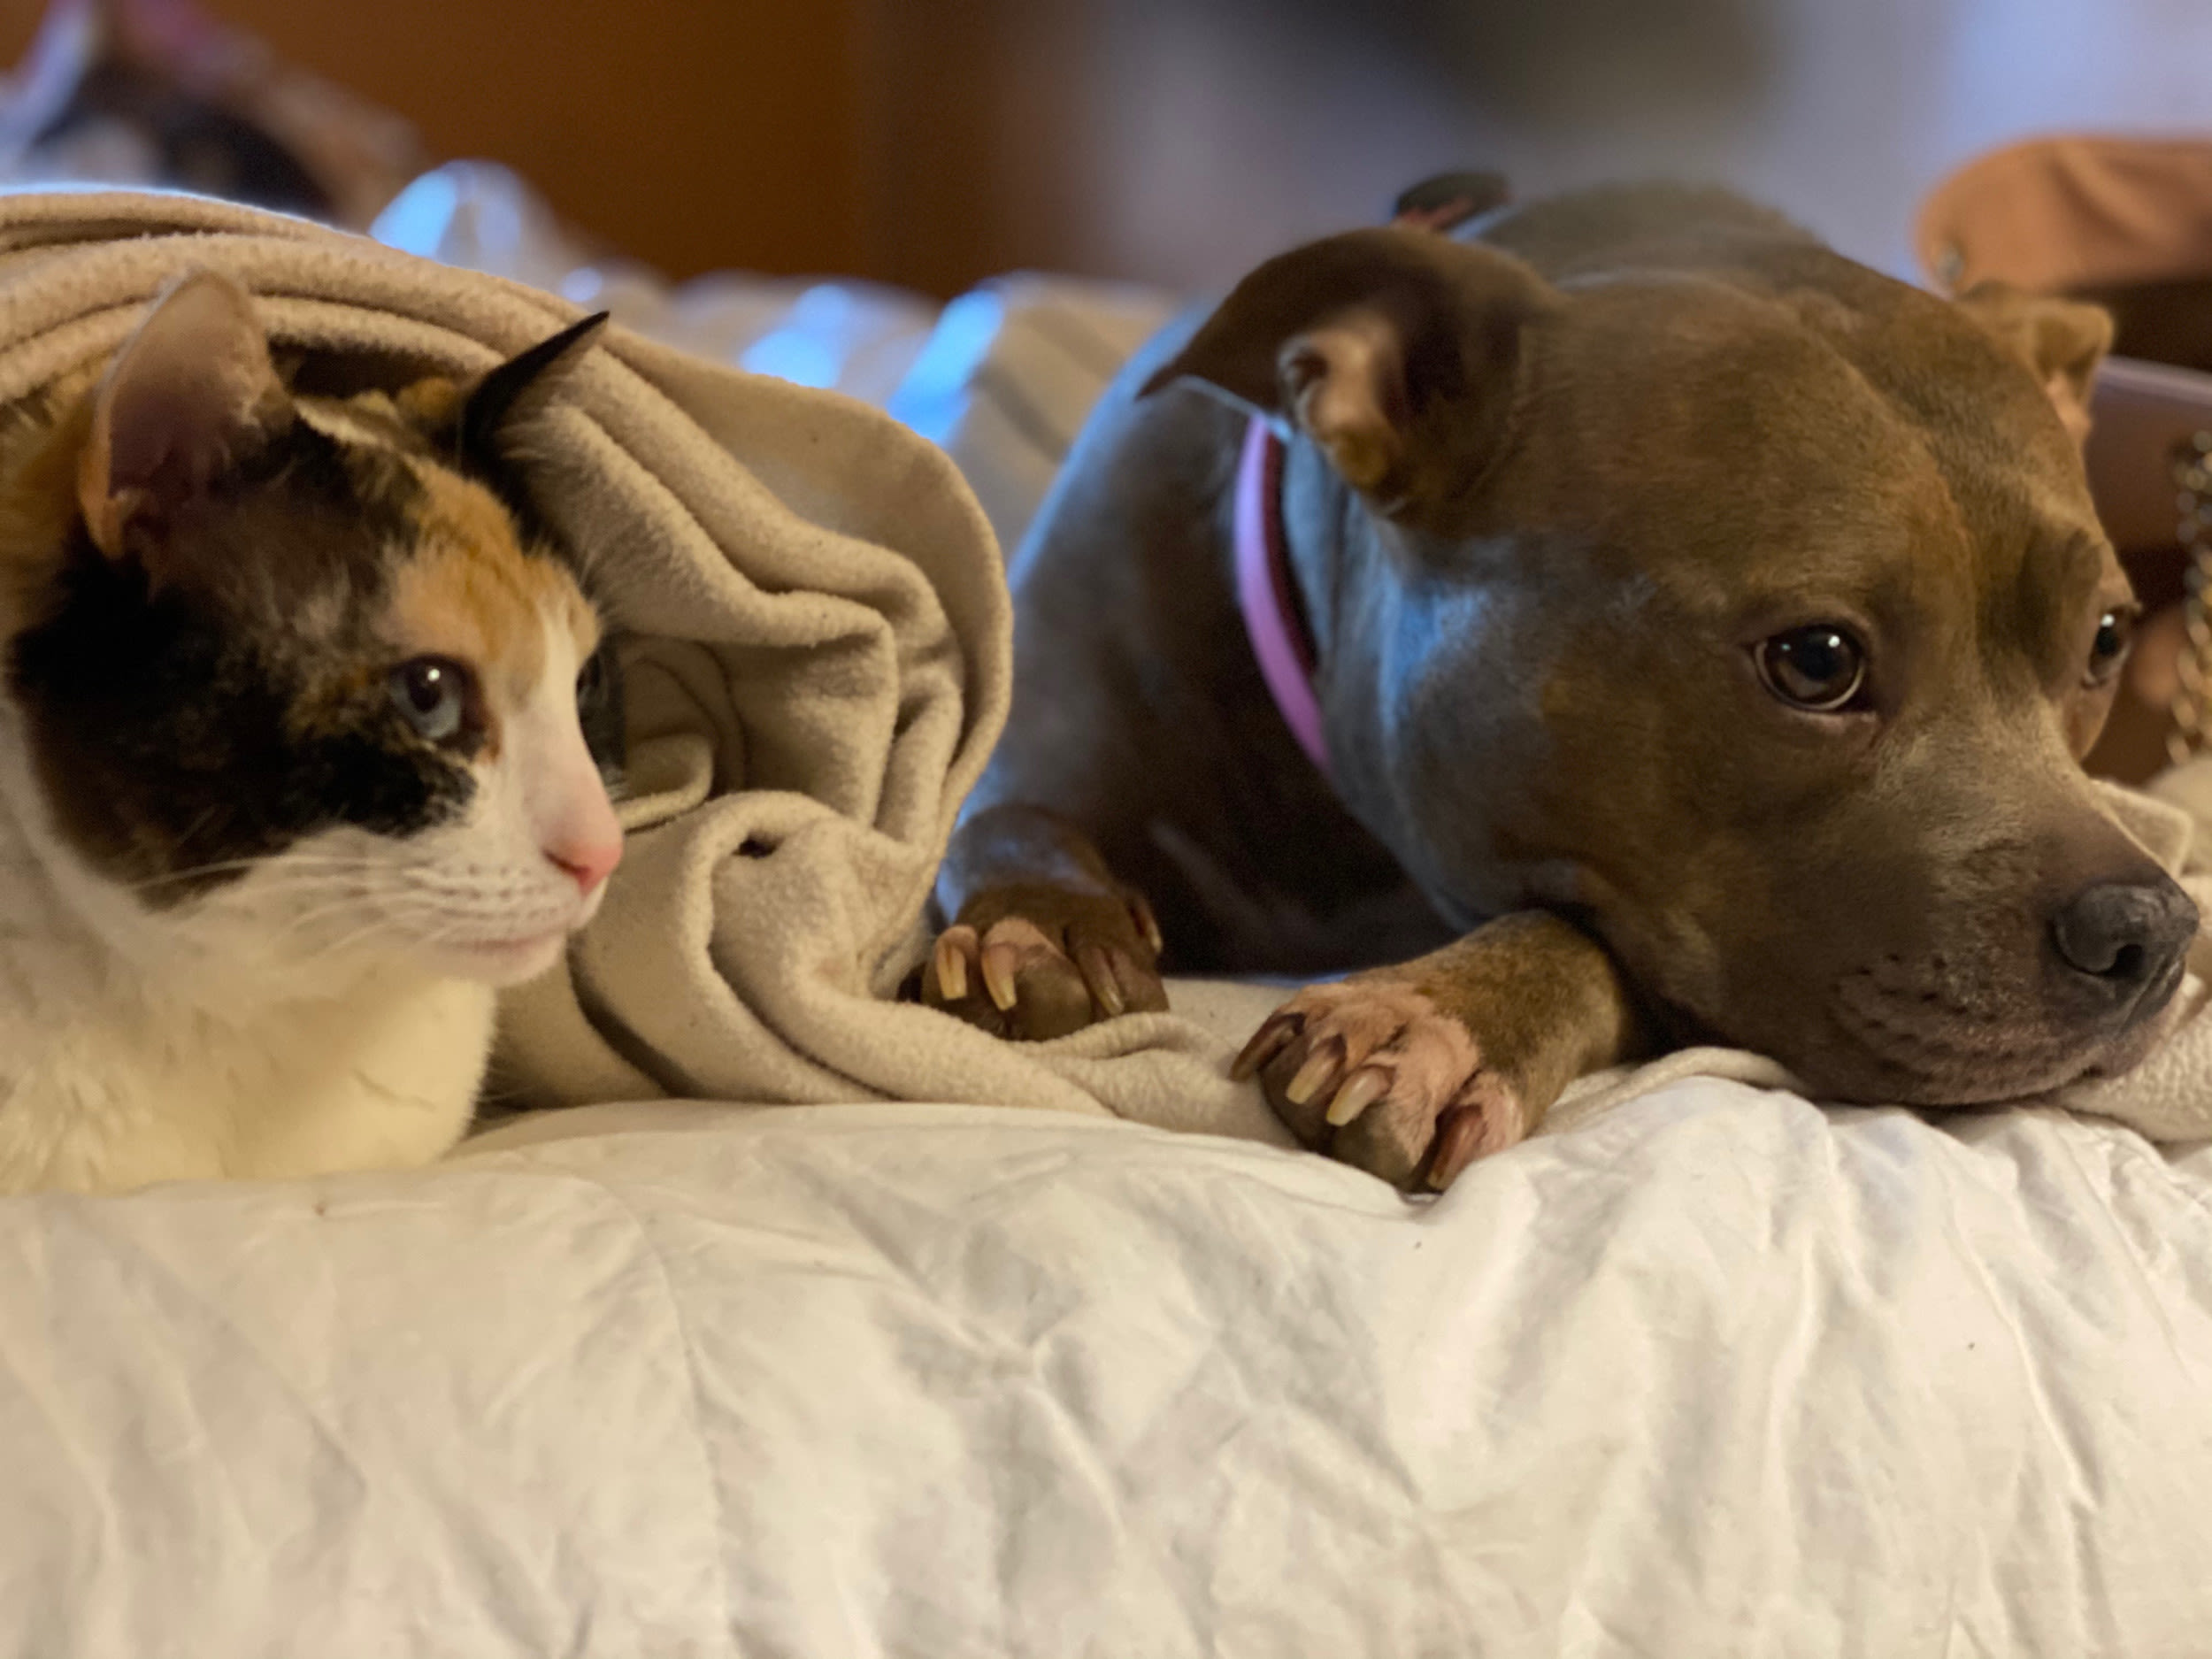 Dog defending her cat sibling delights internet: "She's safe"